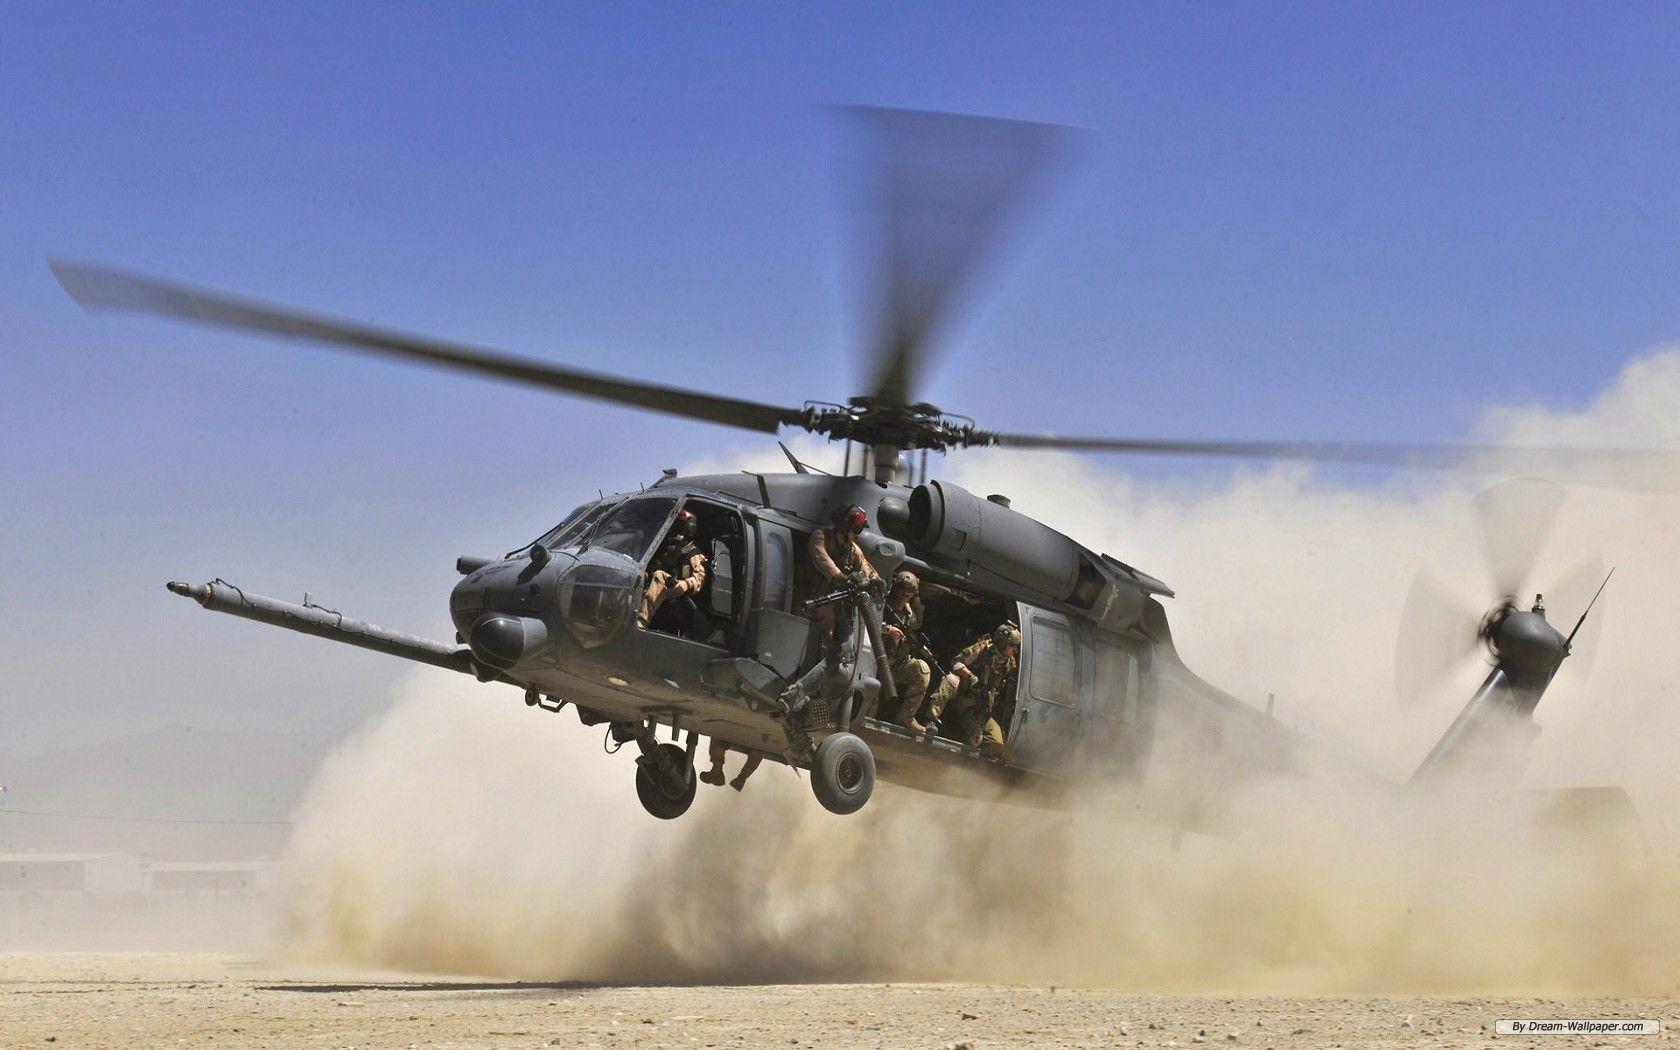 Hình nền miễn phí 1680x1050 - Hình nền chụp ảnh miễn phí - Máy bay trực thăng quân sự